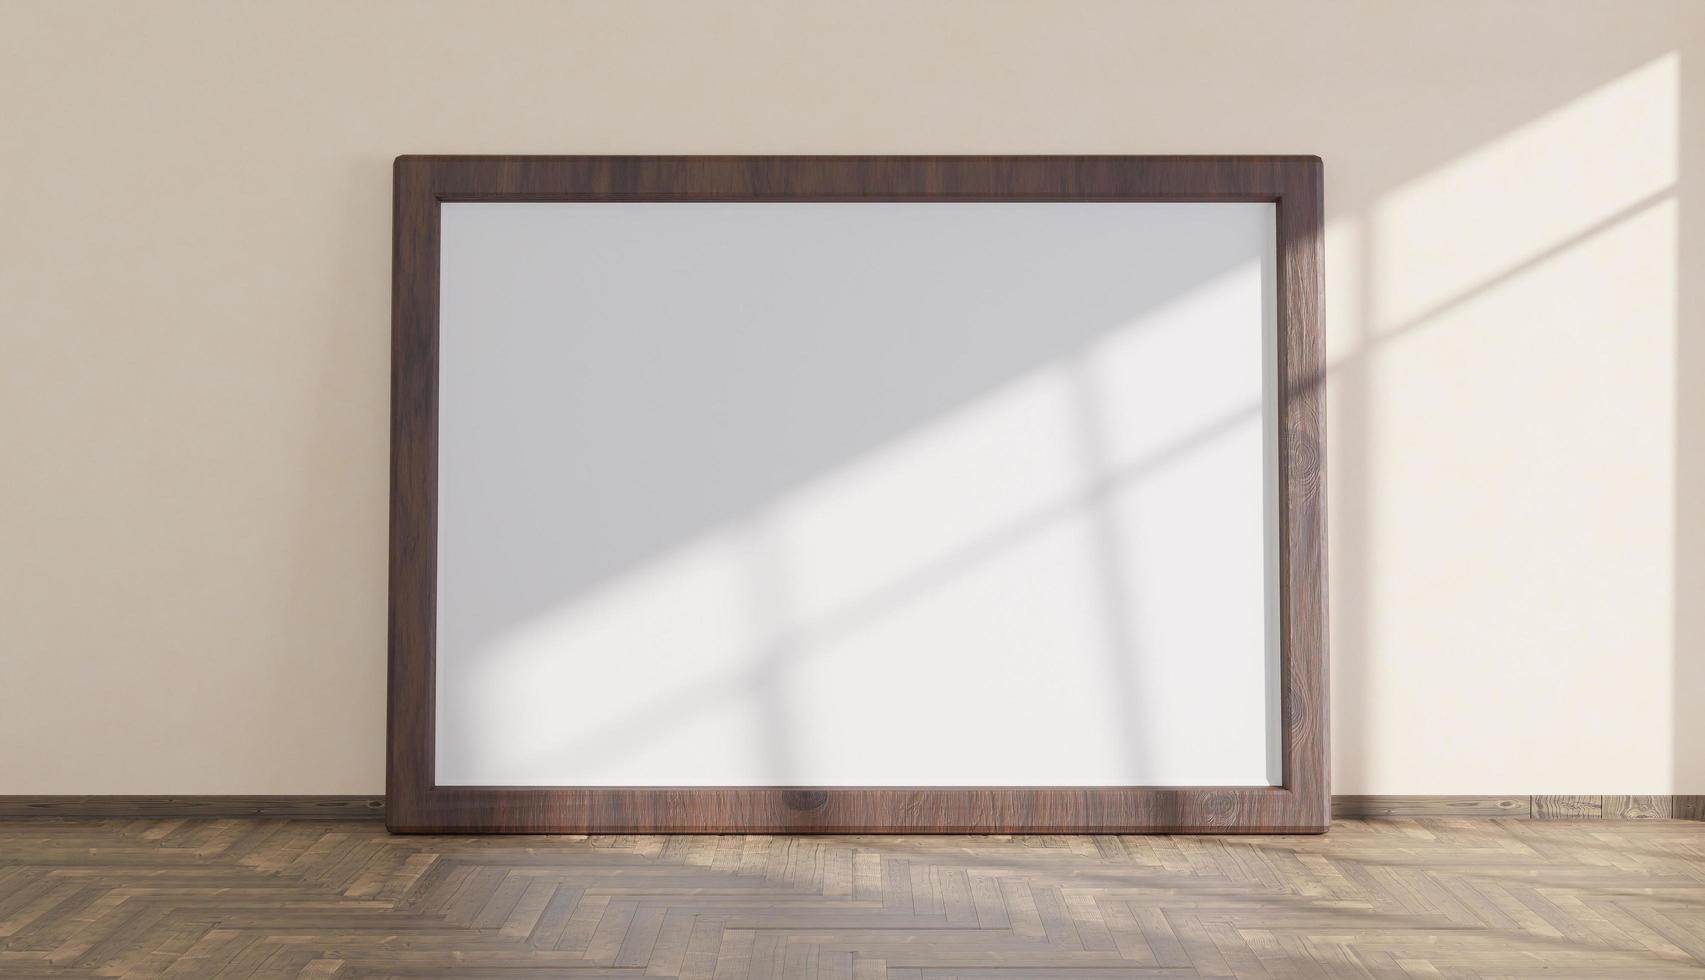 Maqueta con gran marco de madera sobre suelo de parquet iluminado por la luz que entra por la ventana, 3D Render foto